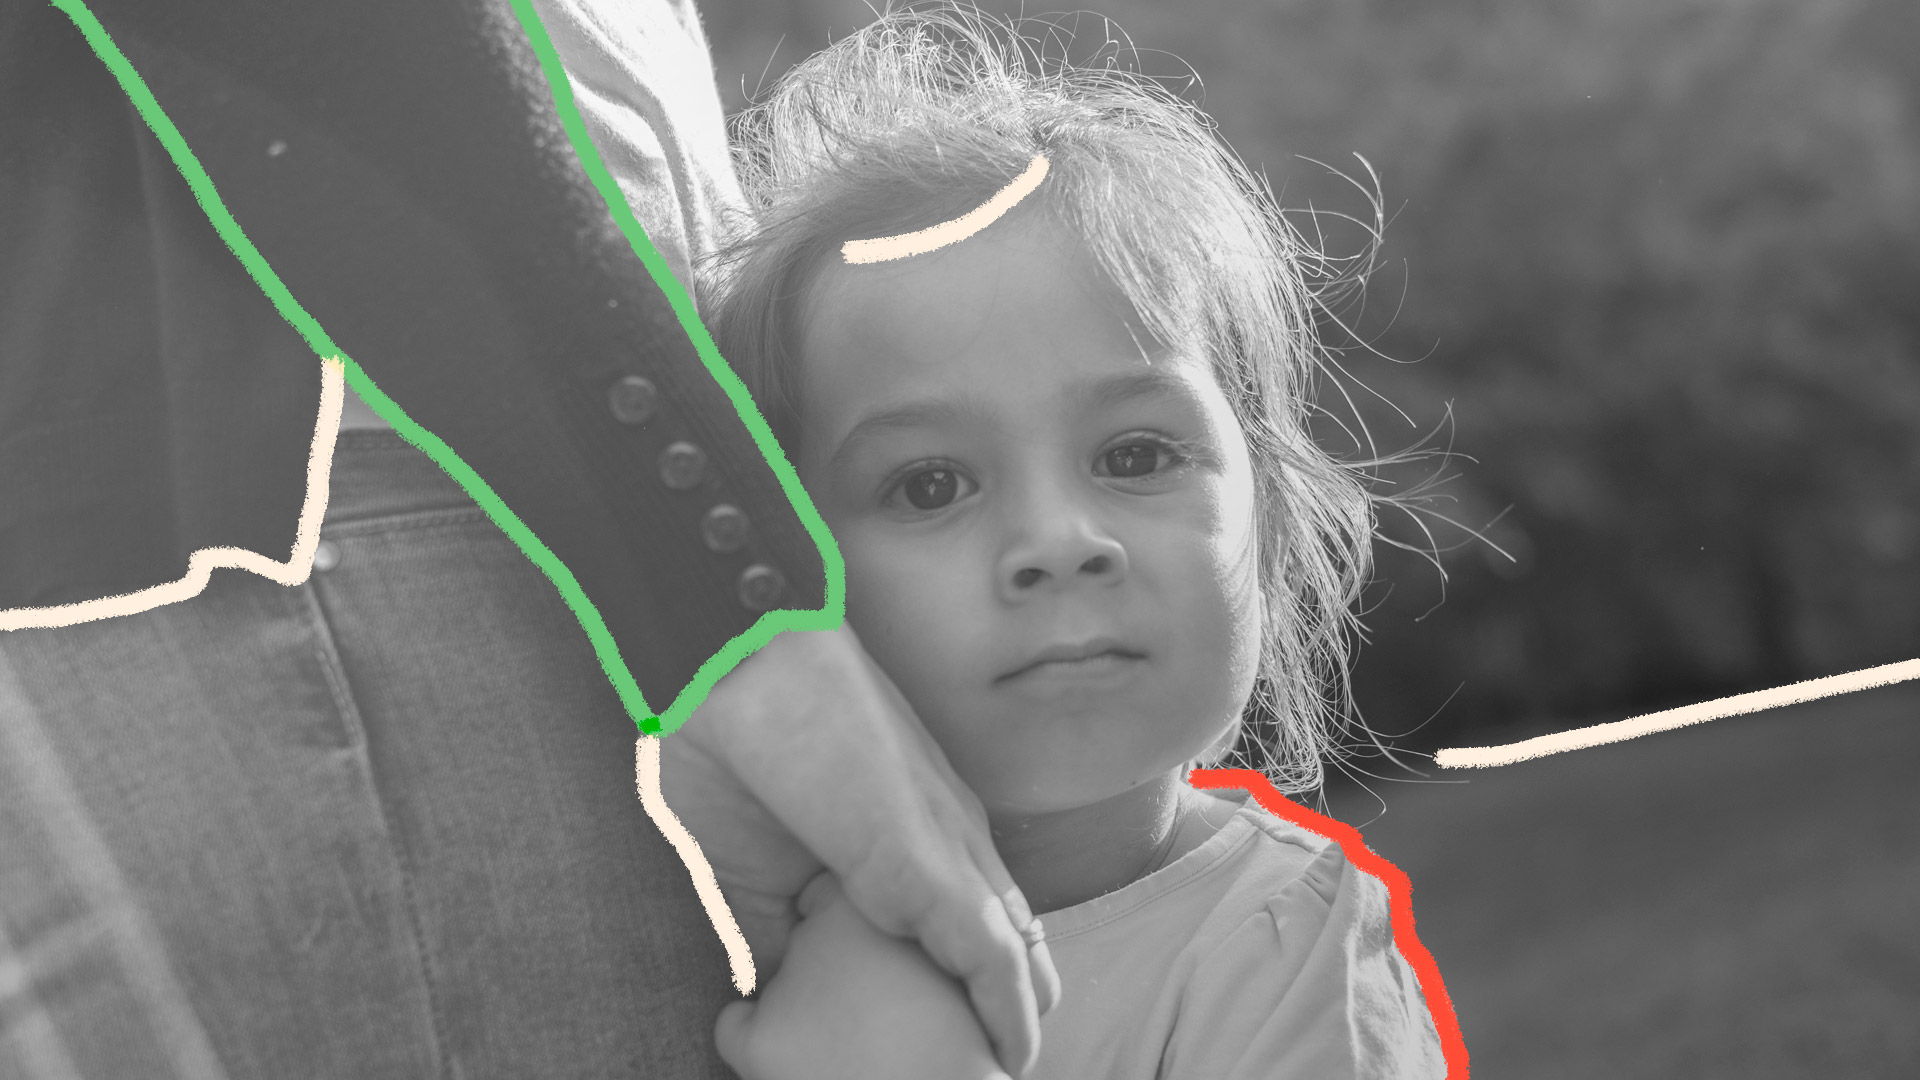 Coronavírus e desigualdade social: Uma imagem em preto e branco, de uma menina aparentando ter 6 anos de idade, com cabelos castanhos e amarrados, olhos castanho-escuro, olhando para a câmera com uma expressão pensativa. Ela segura uma mão de uma mulher vestindo terno preto, aparecendo apenas parte do seu braço.